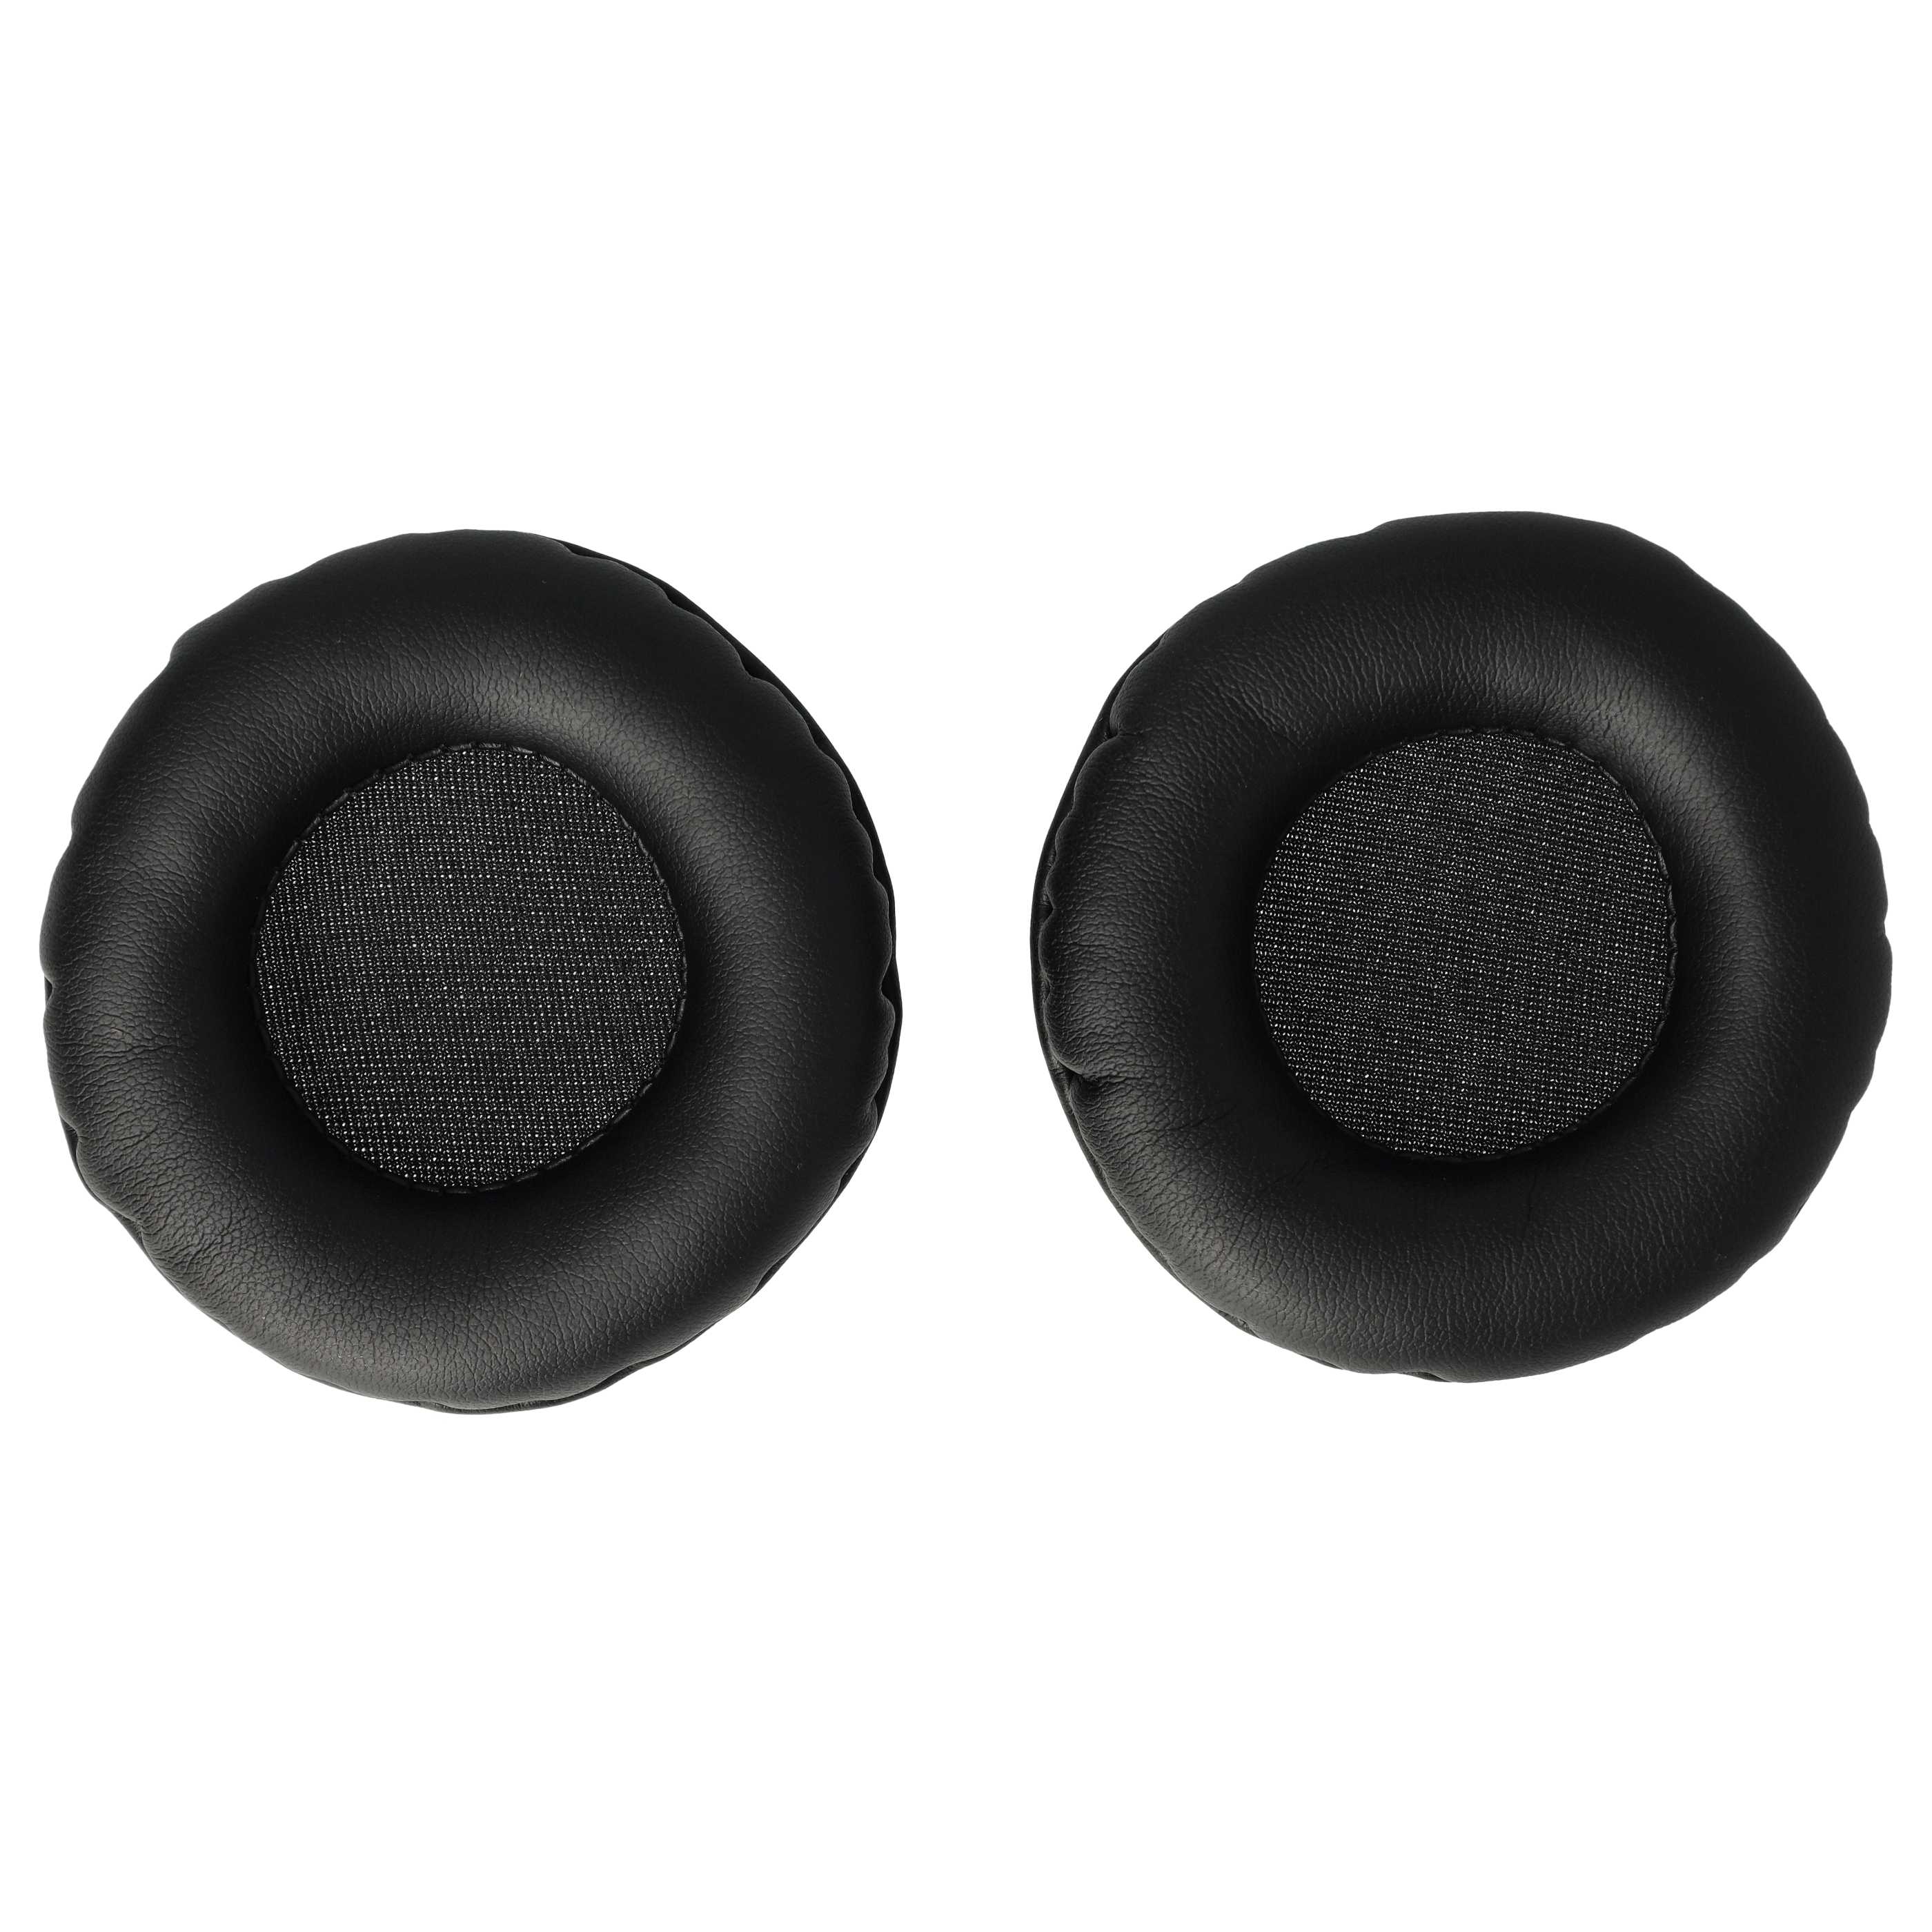 2x Coussinets d'oreille 6,5cm pour casque écouteurs nécessitant des coussinets de 65 mm / t.Bone HD 660 et aut